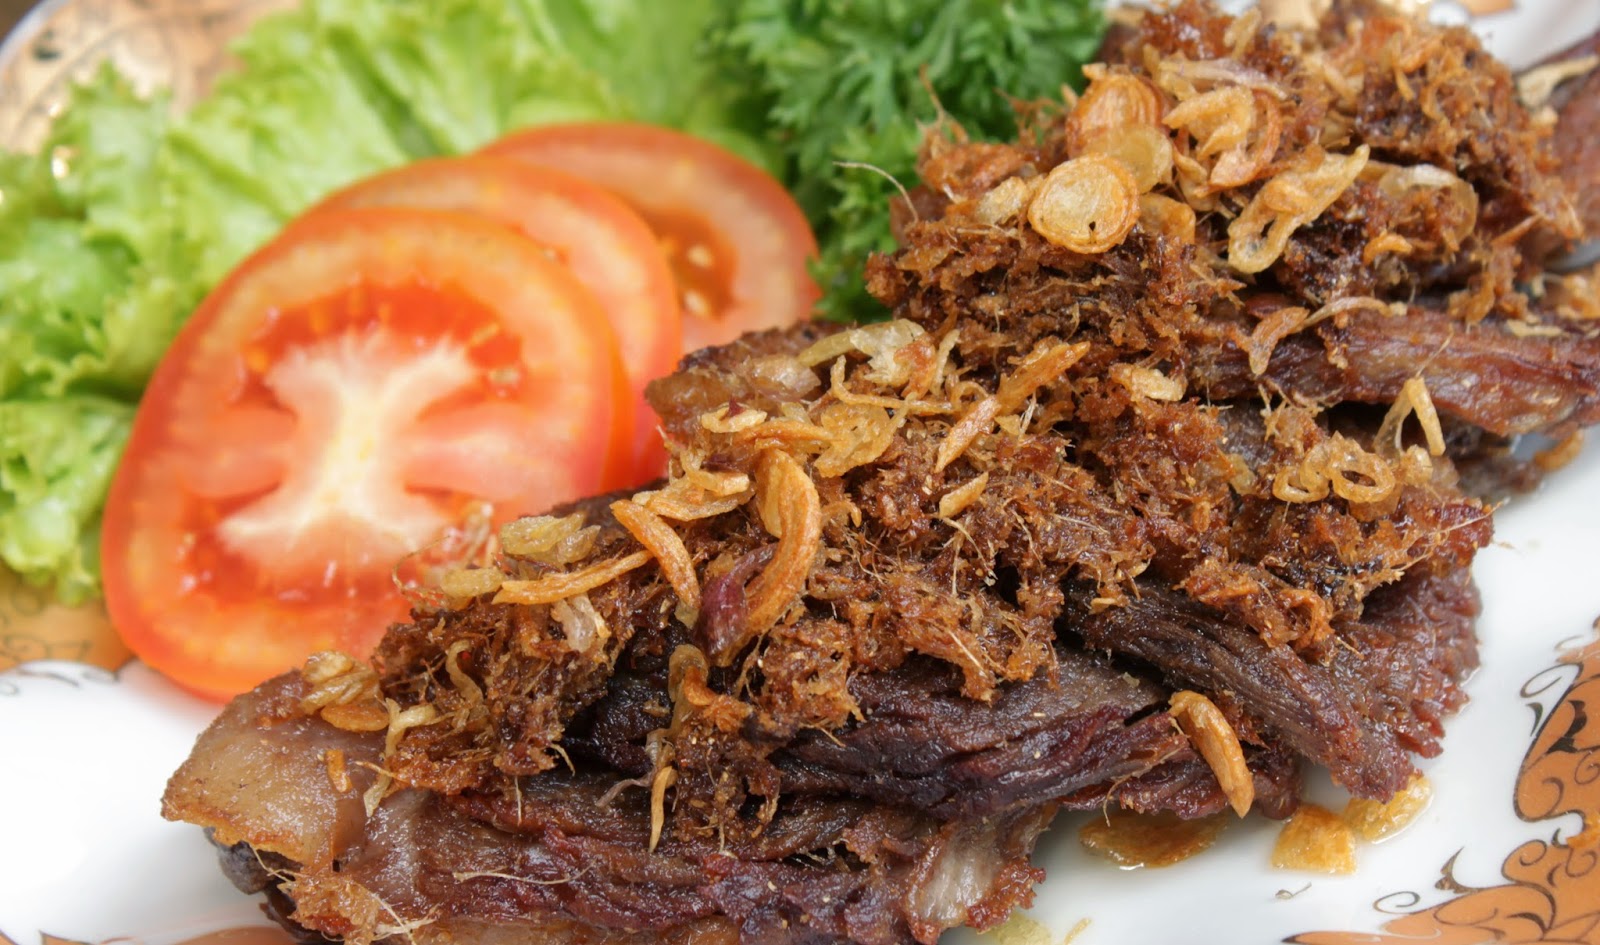 Resep Empal Daging Yang Empuk Dan Gurih Resep Masakan Indonesia